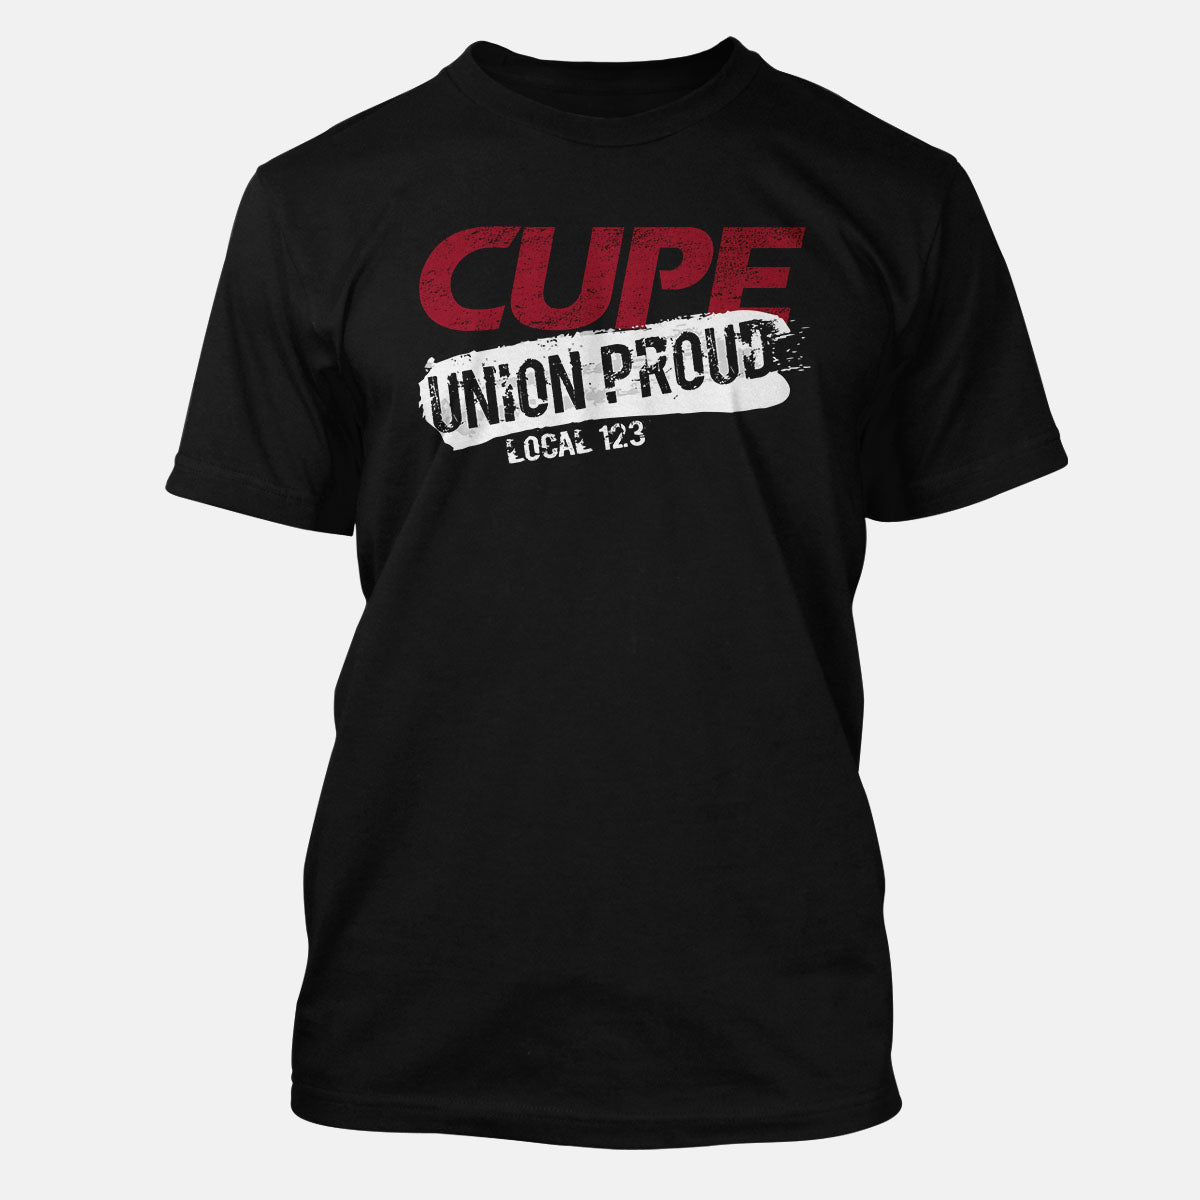 CUPE Union Proud Splatter Apparel